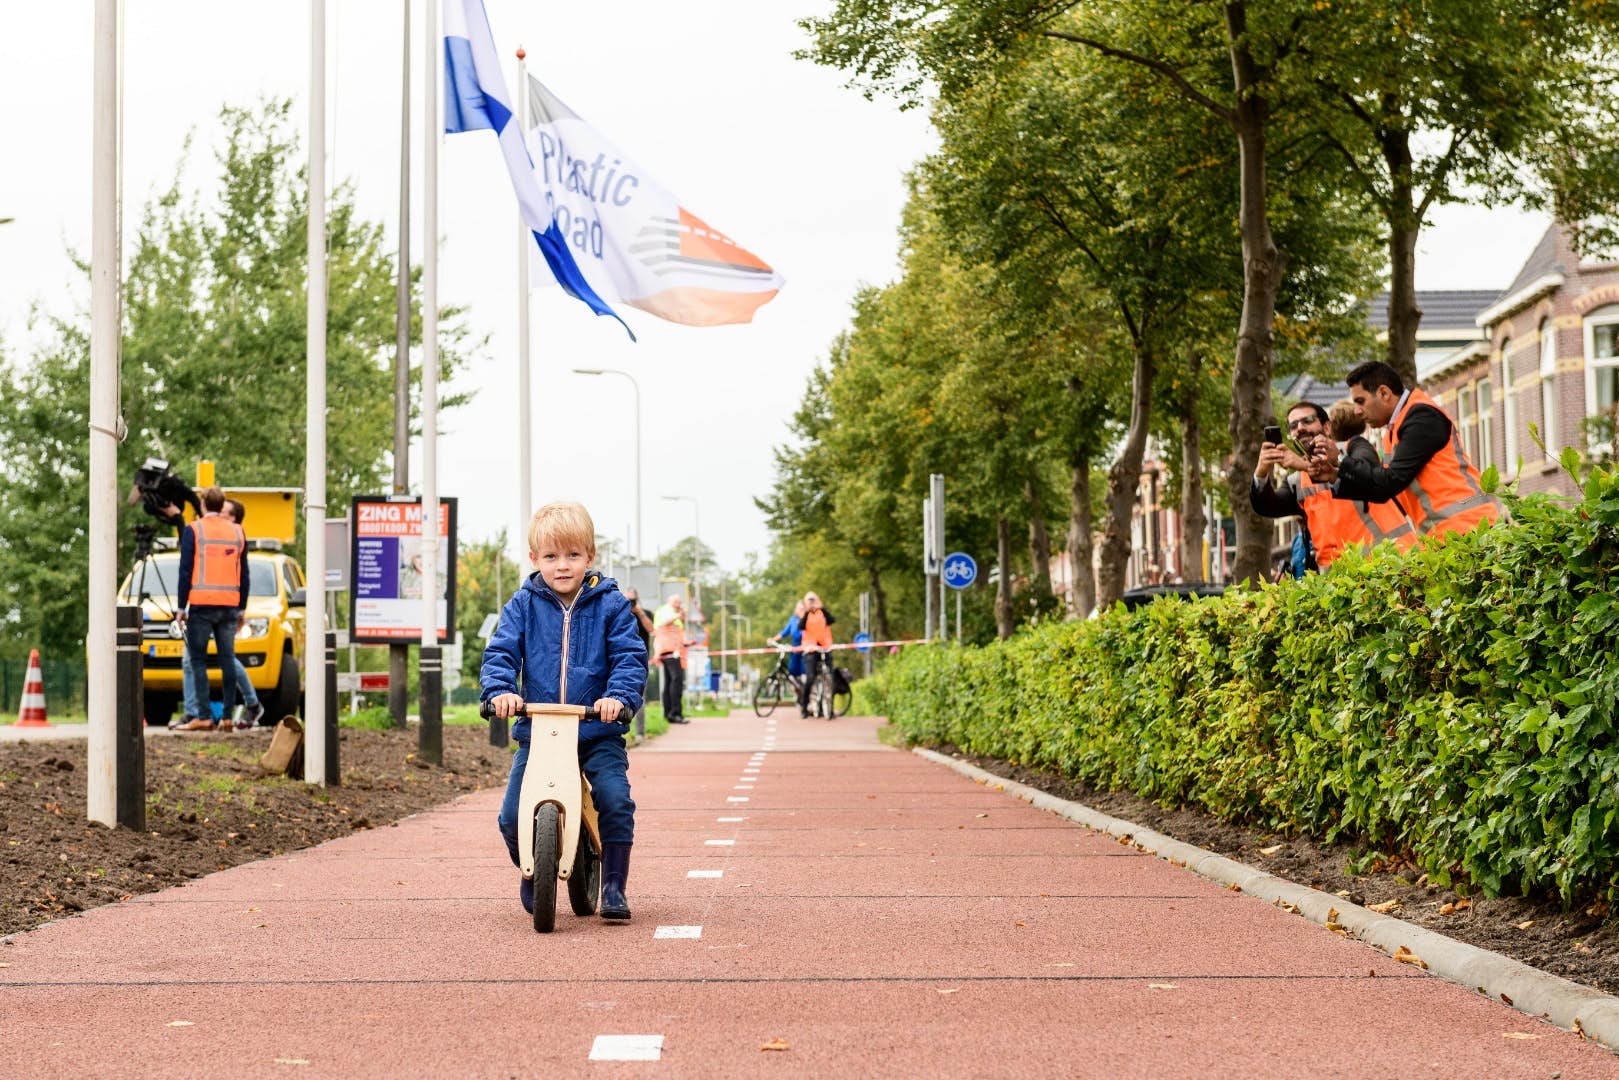 L’Olanda è meta virtuosa per quanto riguarda piste ciclabili e turismo sostenibile. Nimega è stata eletta capitale verde europea 2018